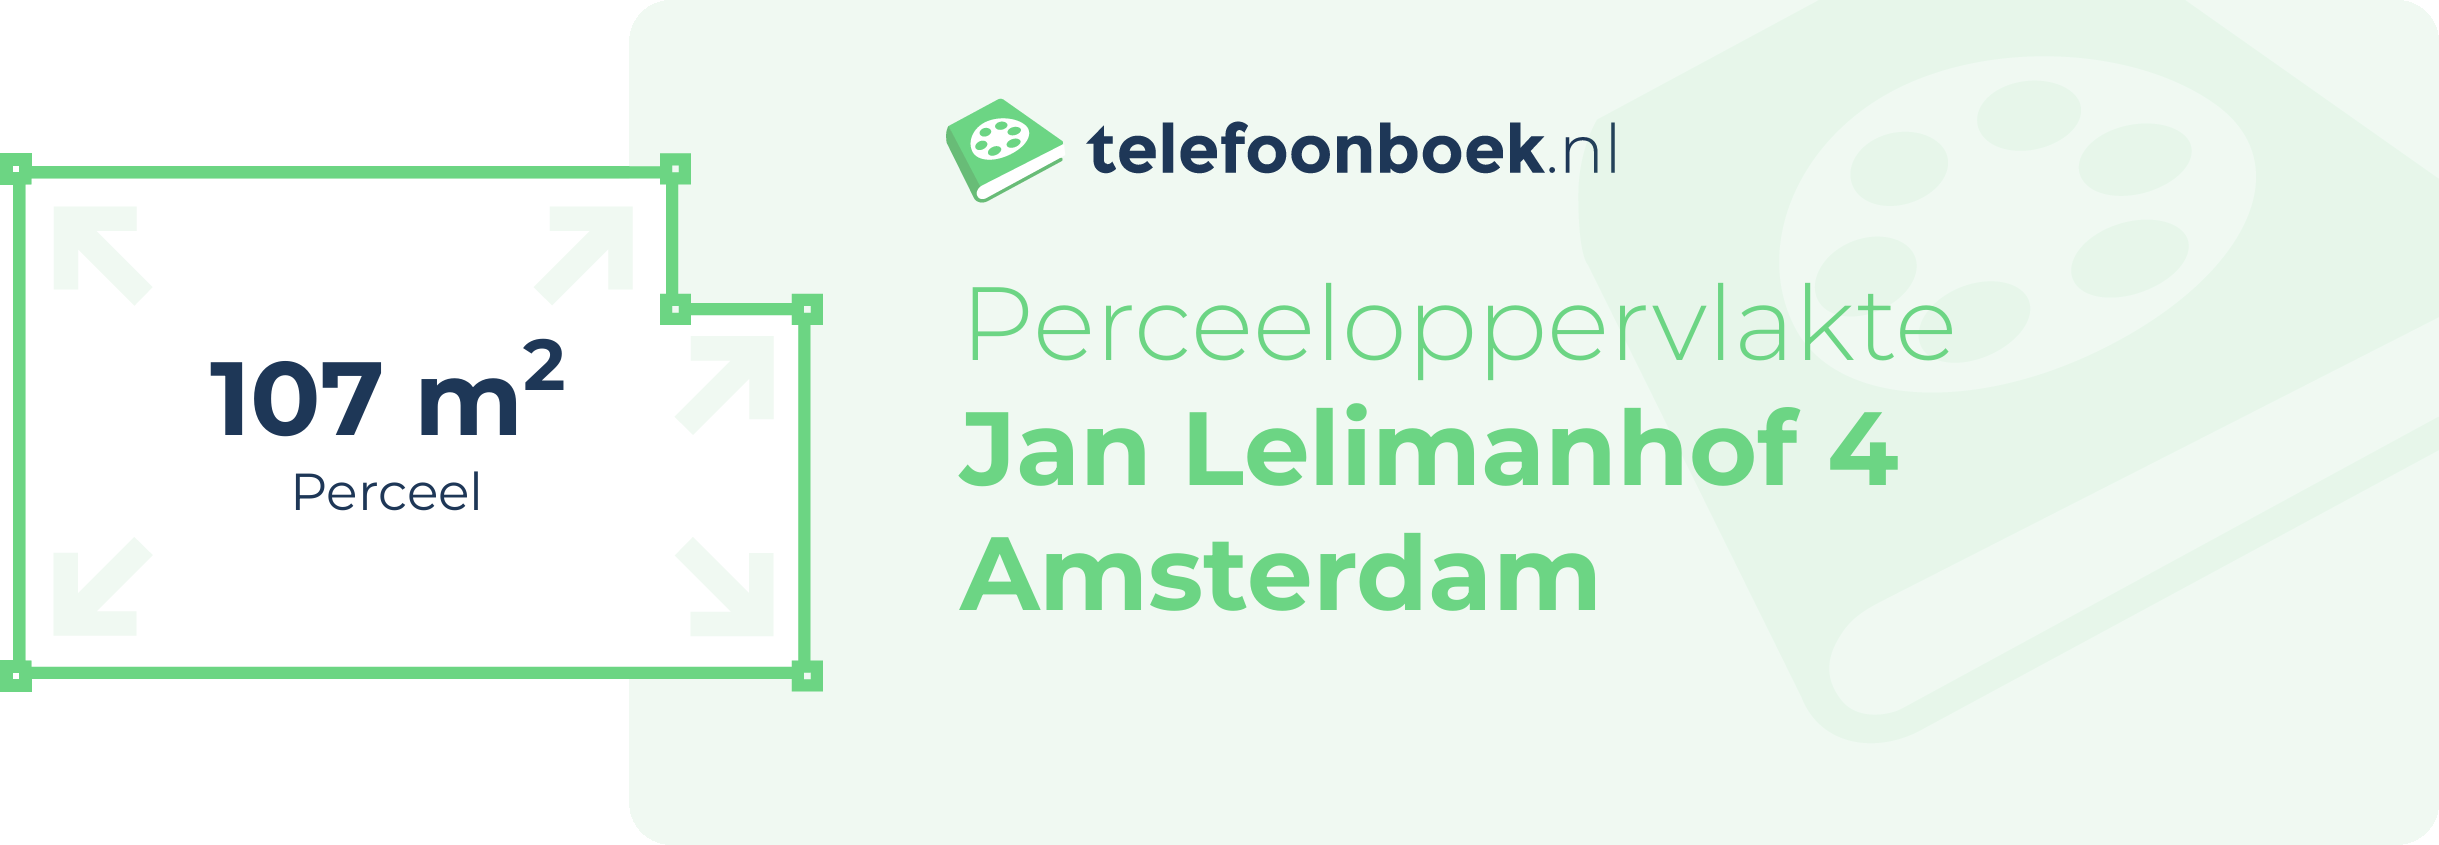 Perceeloppervlakte Jan Lelimanhof 4 Amsterdam